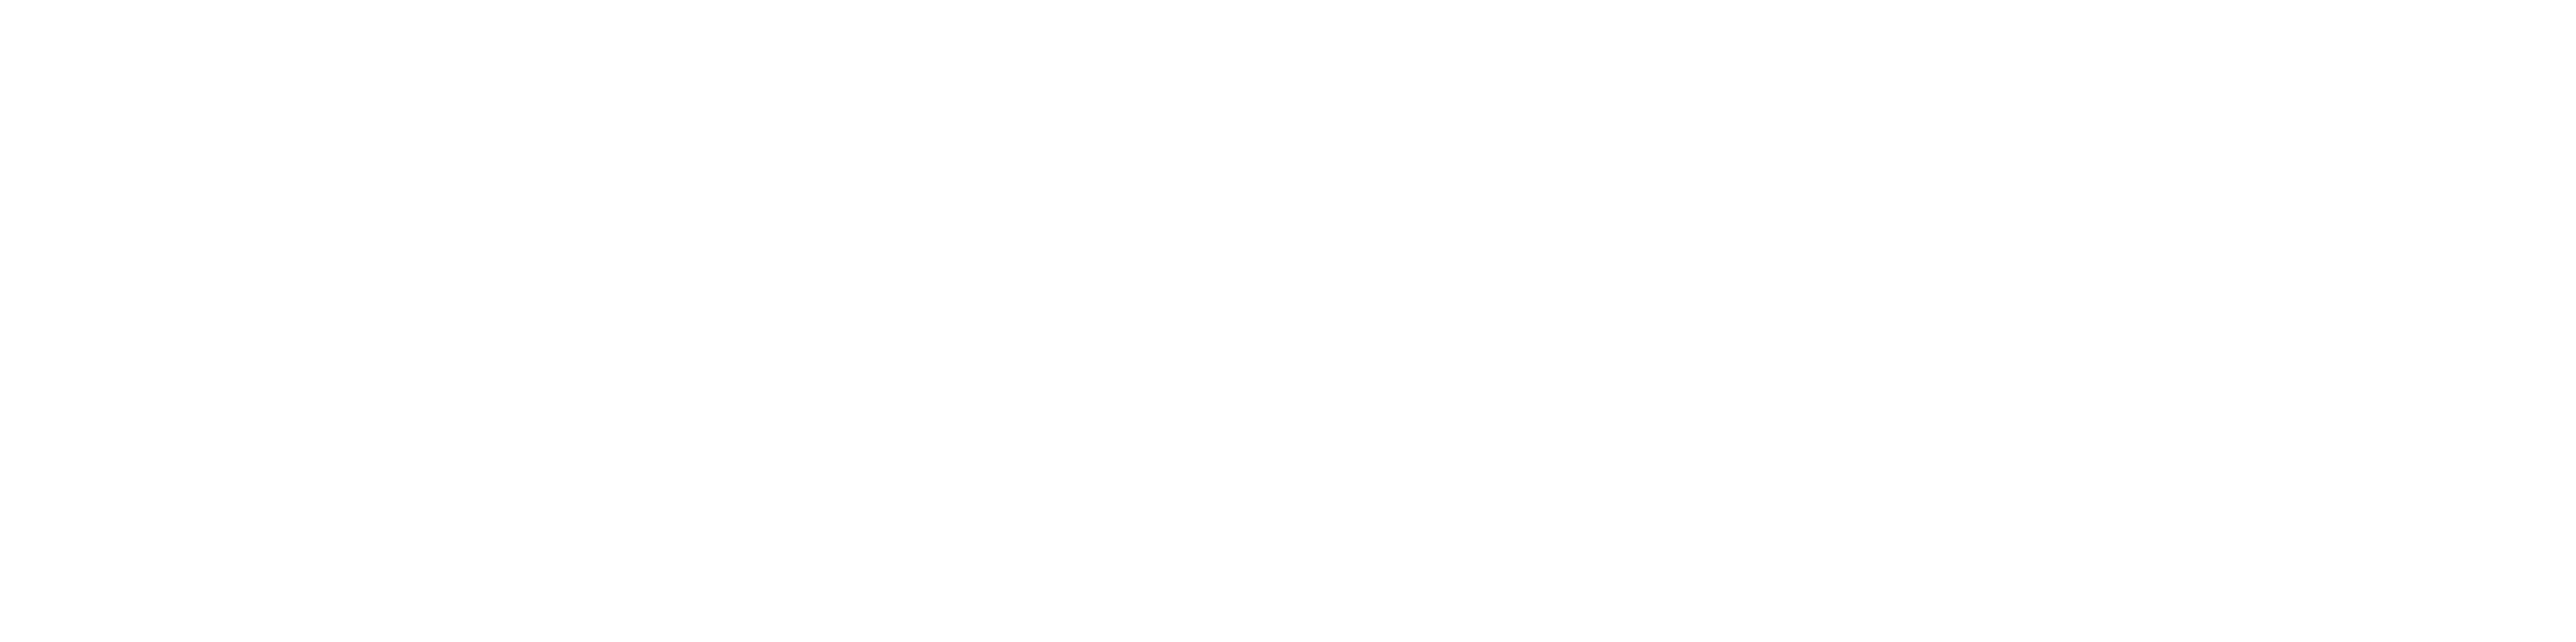 Shubert foundation logo